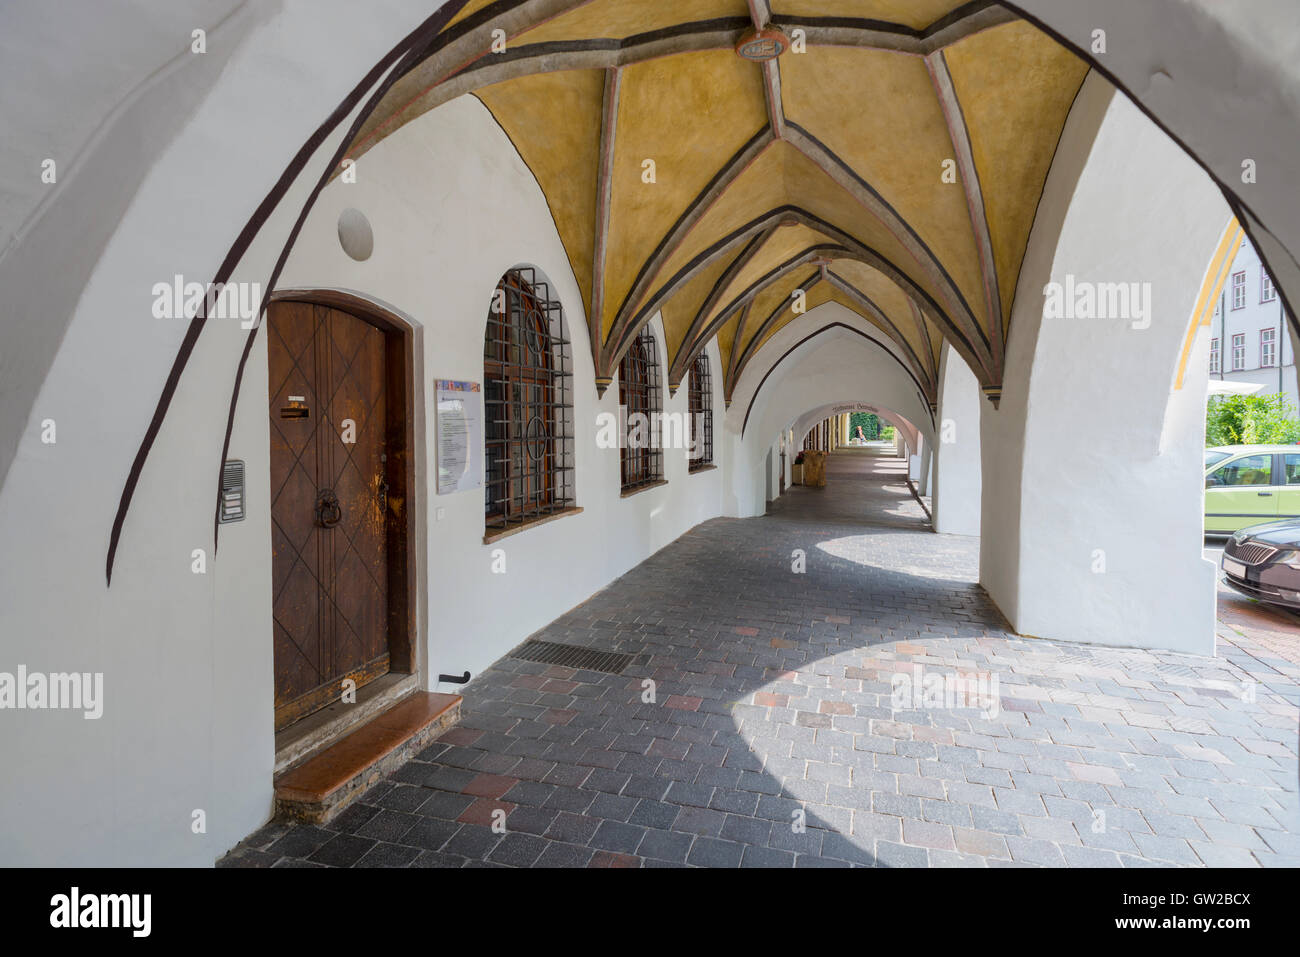 Tresor-Passage von einem mittelalterlichen Patrizier Museum Stadthaus in der Altstadt am Wasserburg bin Inn, Bayern, Deutschland Stockfoto